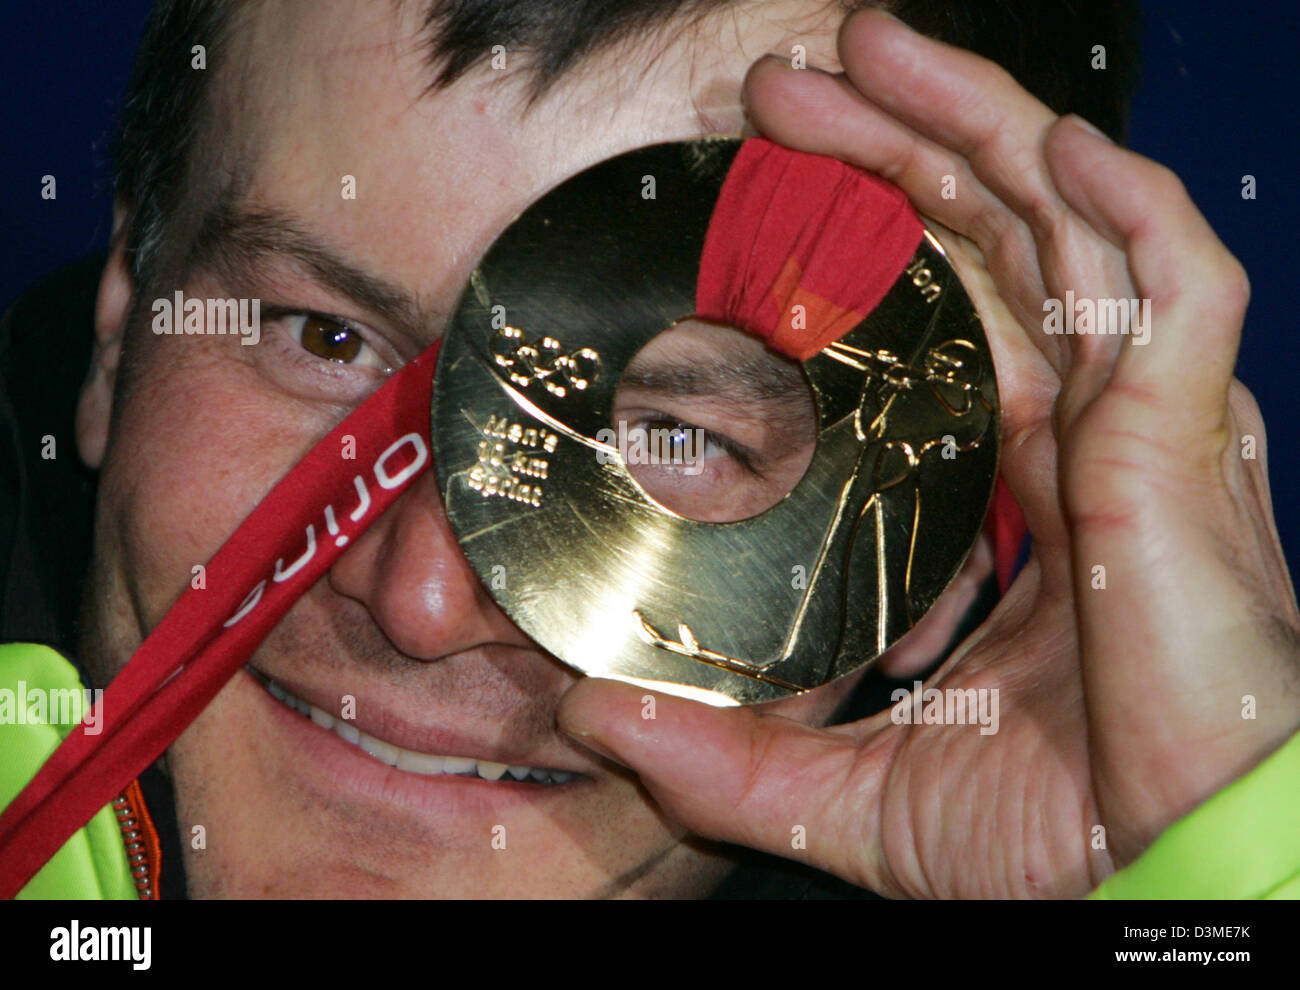 Biatleta tedesco Sven Fischer guarda attraverso un intero nella sua medaglia d'oro olimpica dopo la cerimonia di premiazione si terrà a Torino, Italia, Martedì, 14 febbraio 2006. Fischer ha vinto il maschile di biathlon event oltre dieci chilometri. Foto: Frank può Foto Stock